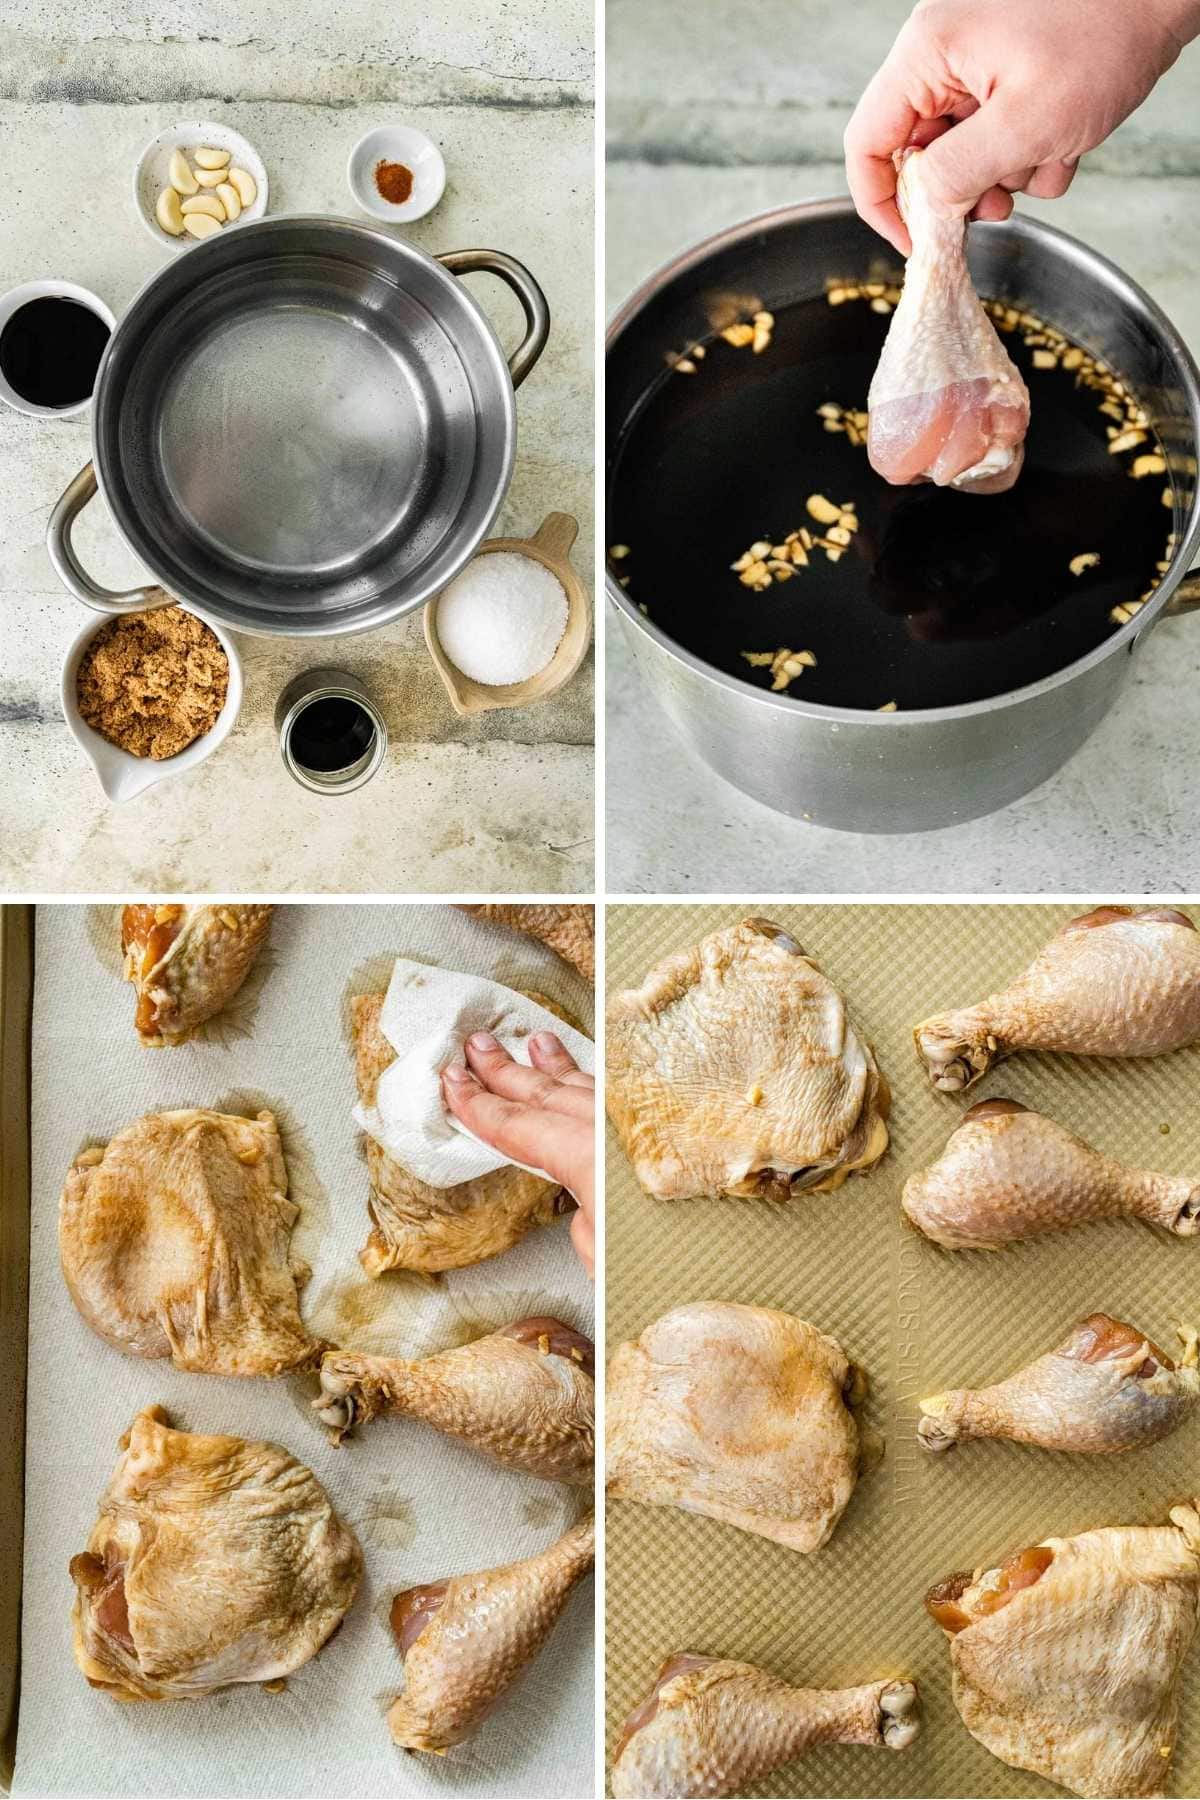 Brown Sugar Chicken Brine collage